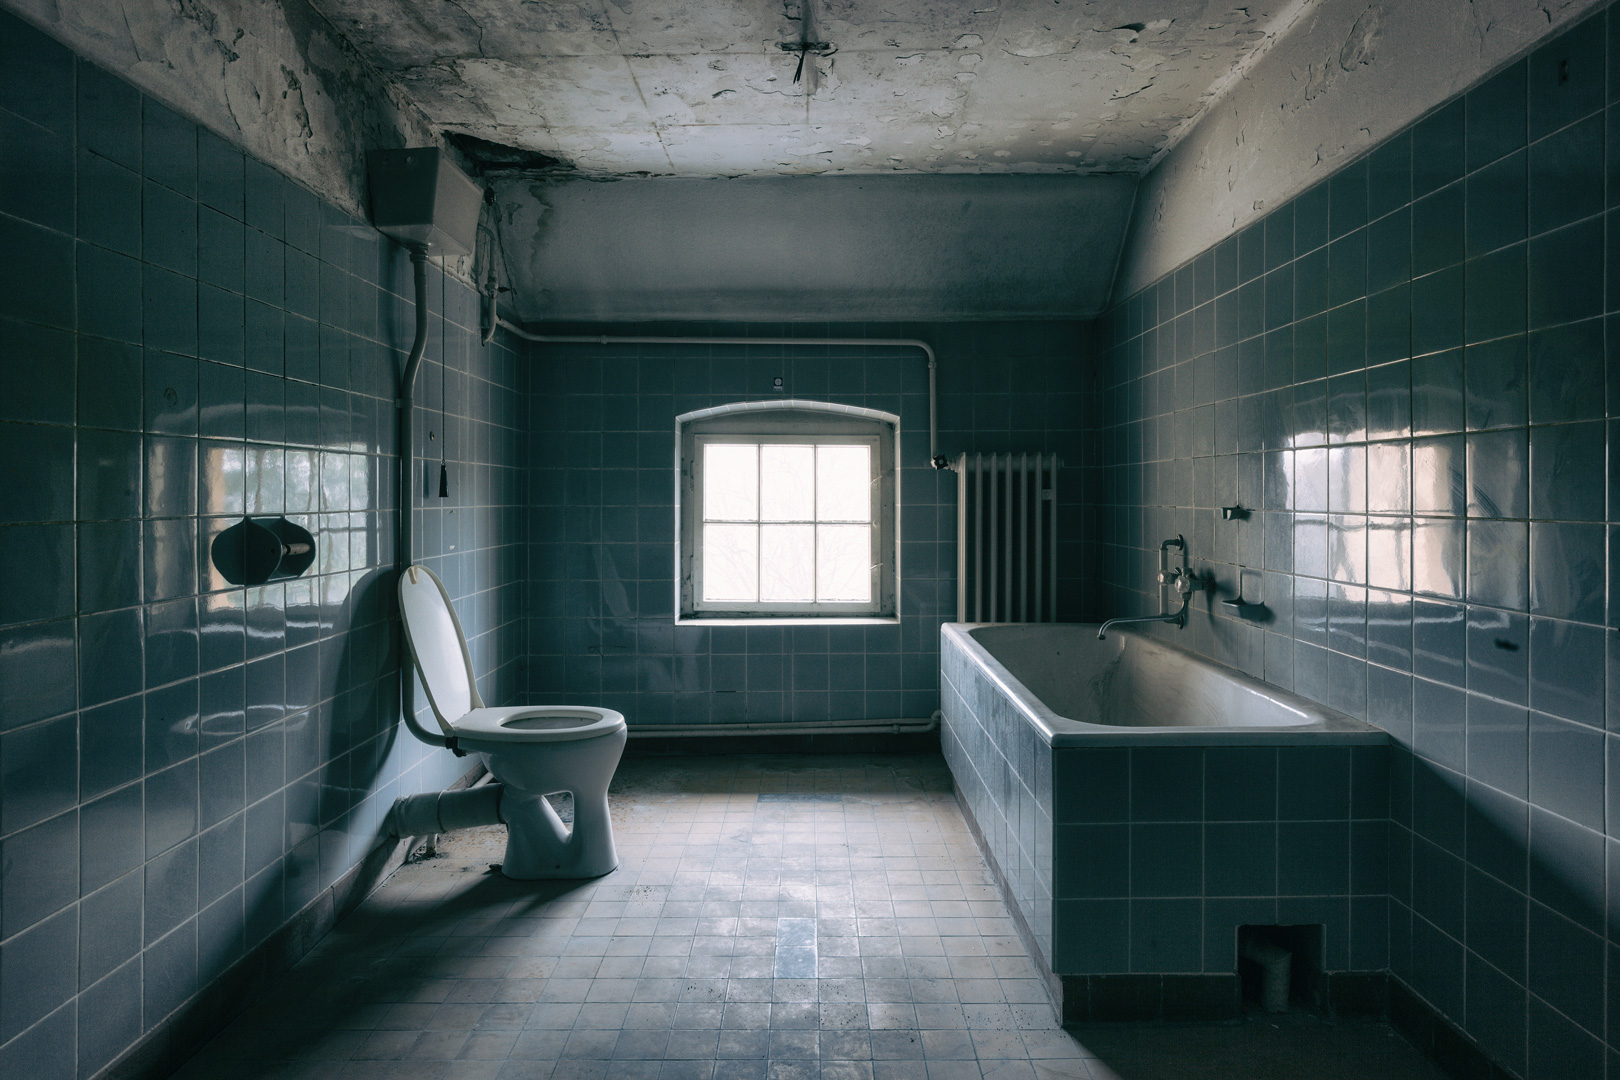 攝影師展示了衰敗浴室的鬼魅圖像的相關圖片